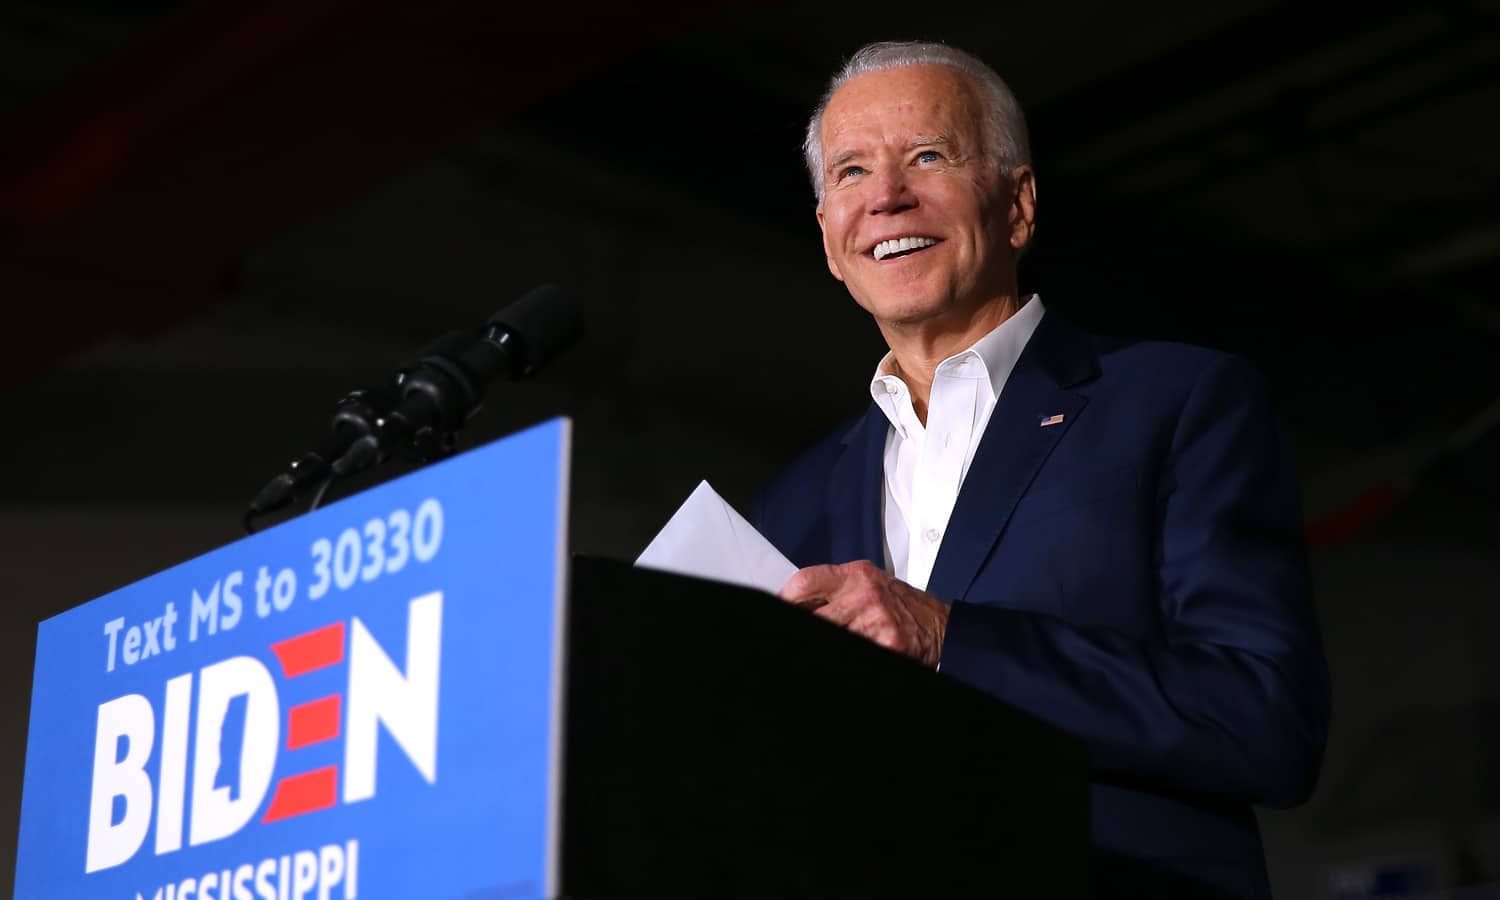 Could Marijuana Legalization Swing Voters To Joe Biden In 2020 Election?